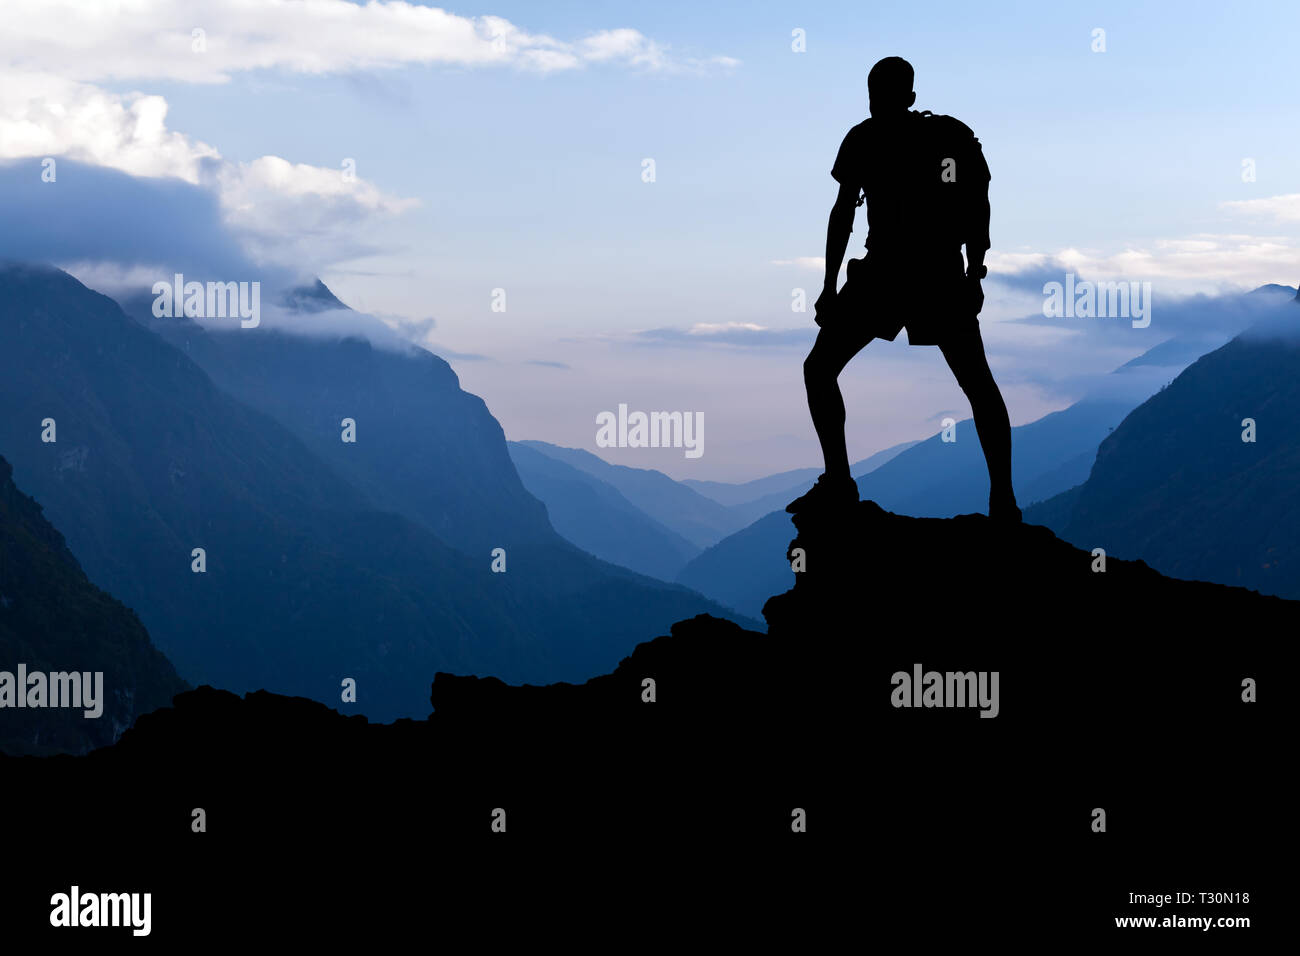 Mann auf erfolgreiche Wandern, Silhouette in Berge. Wanderer auf dem Berg mit Blick auf schöne Landschaft bei Sonnenuntergang im Himalaya, Nepal. Stockfoto